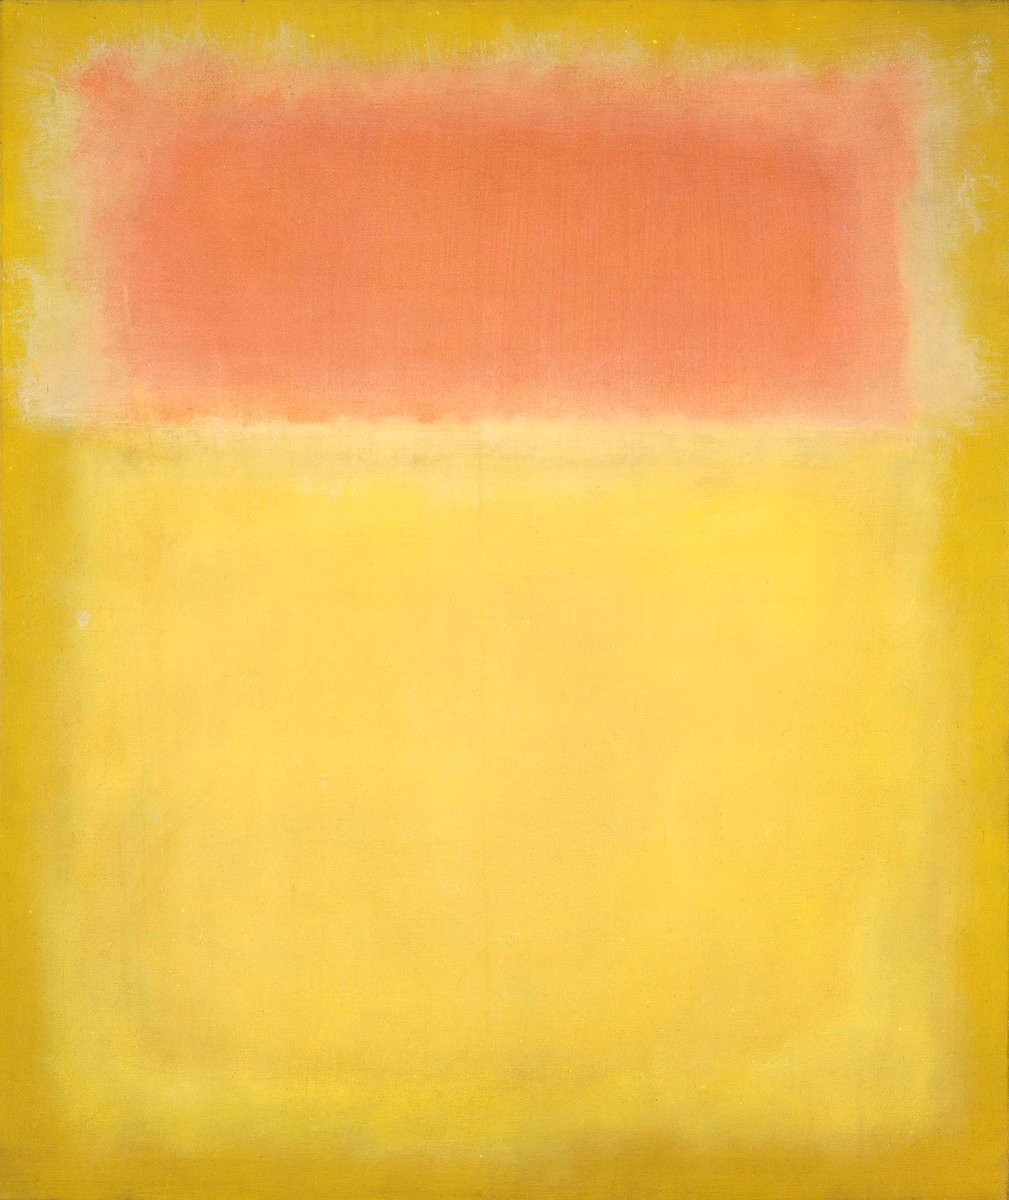 #매일_만나는_미술관 Untitled Mark Rothko 1951 Oil on canvas 112.4 x 94.9 cm ©National Gallery of Art 💛 #artwork #artist #MarkRothko